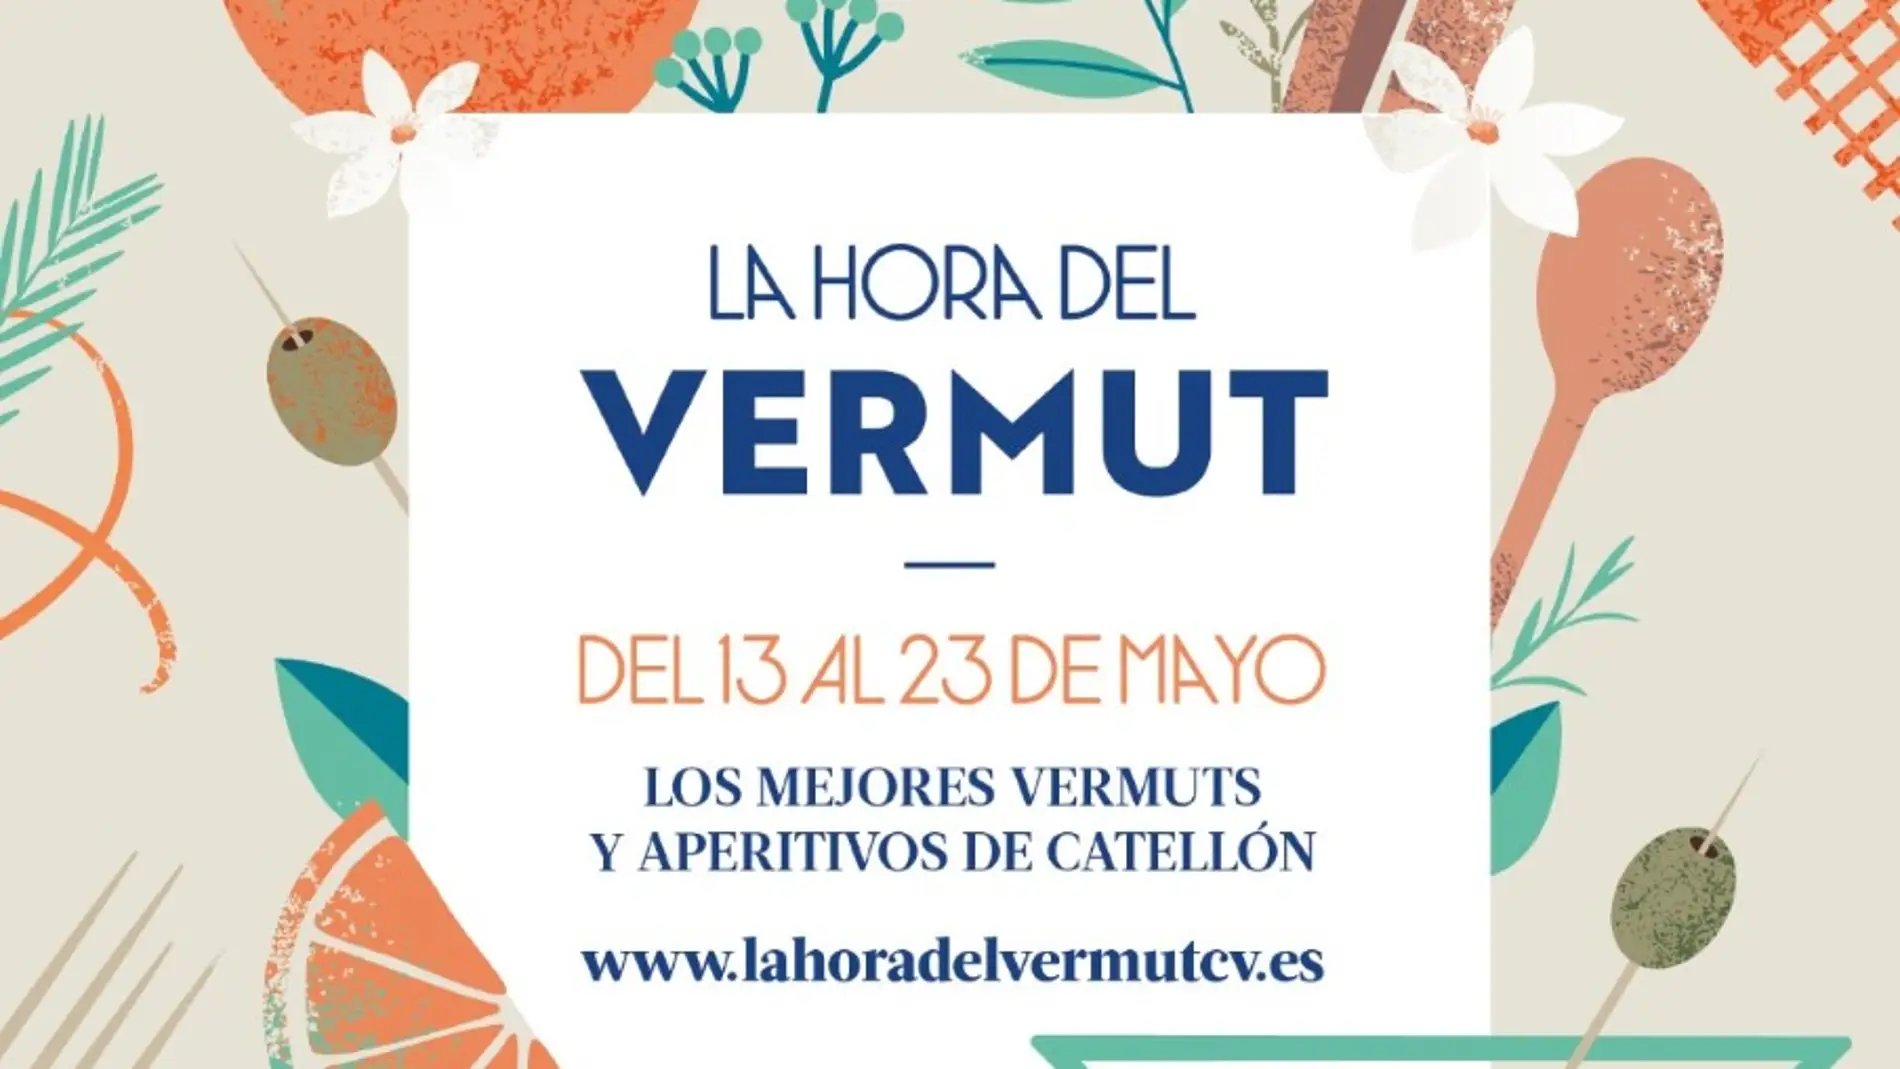 CONHOSTUR presenta La hora del vermut con más de 120 sugerencias en toda la Comunitat Valenciana